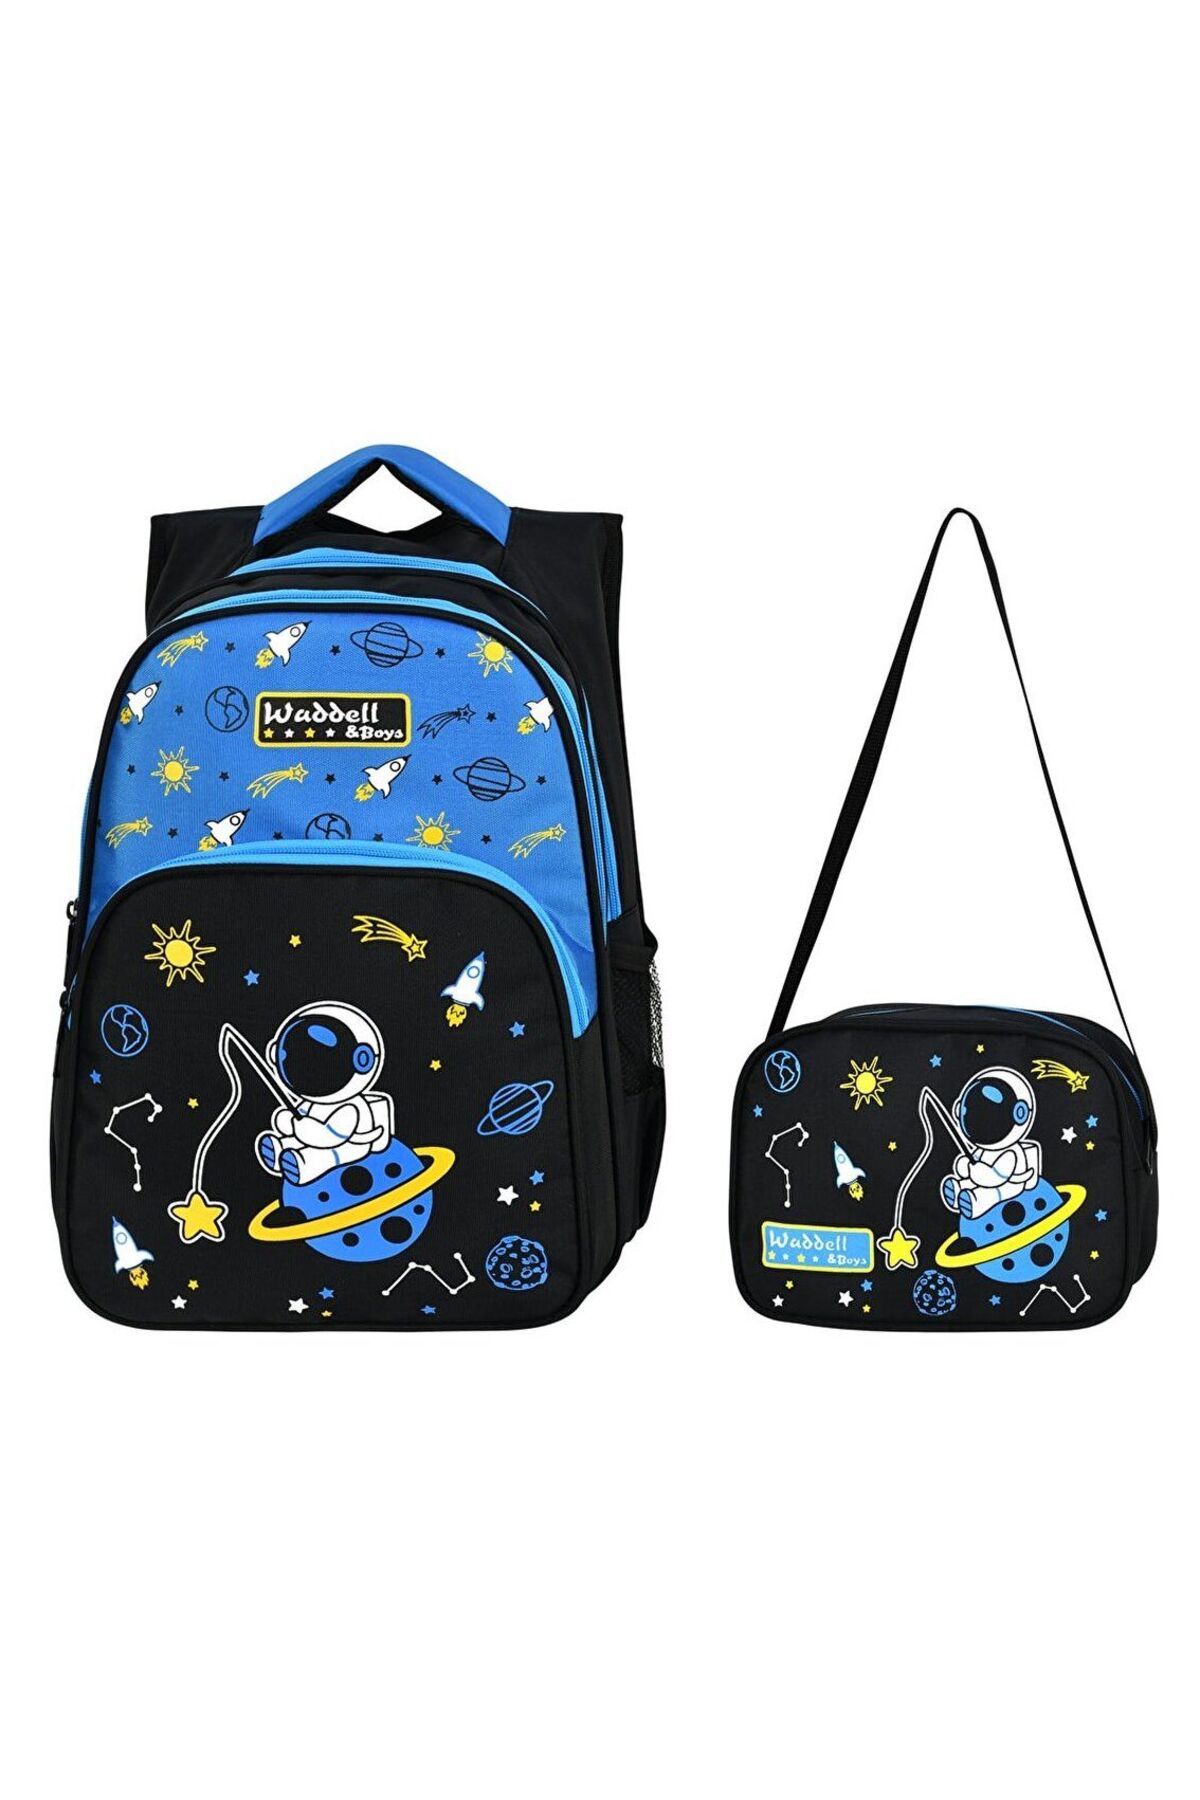 Puzmo Waddell Çanta Siyah Mavi Astronot Ilkokul Çantası - Waddell Bag Erkek Okul Sırt Çantası